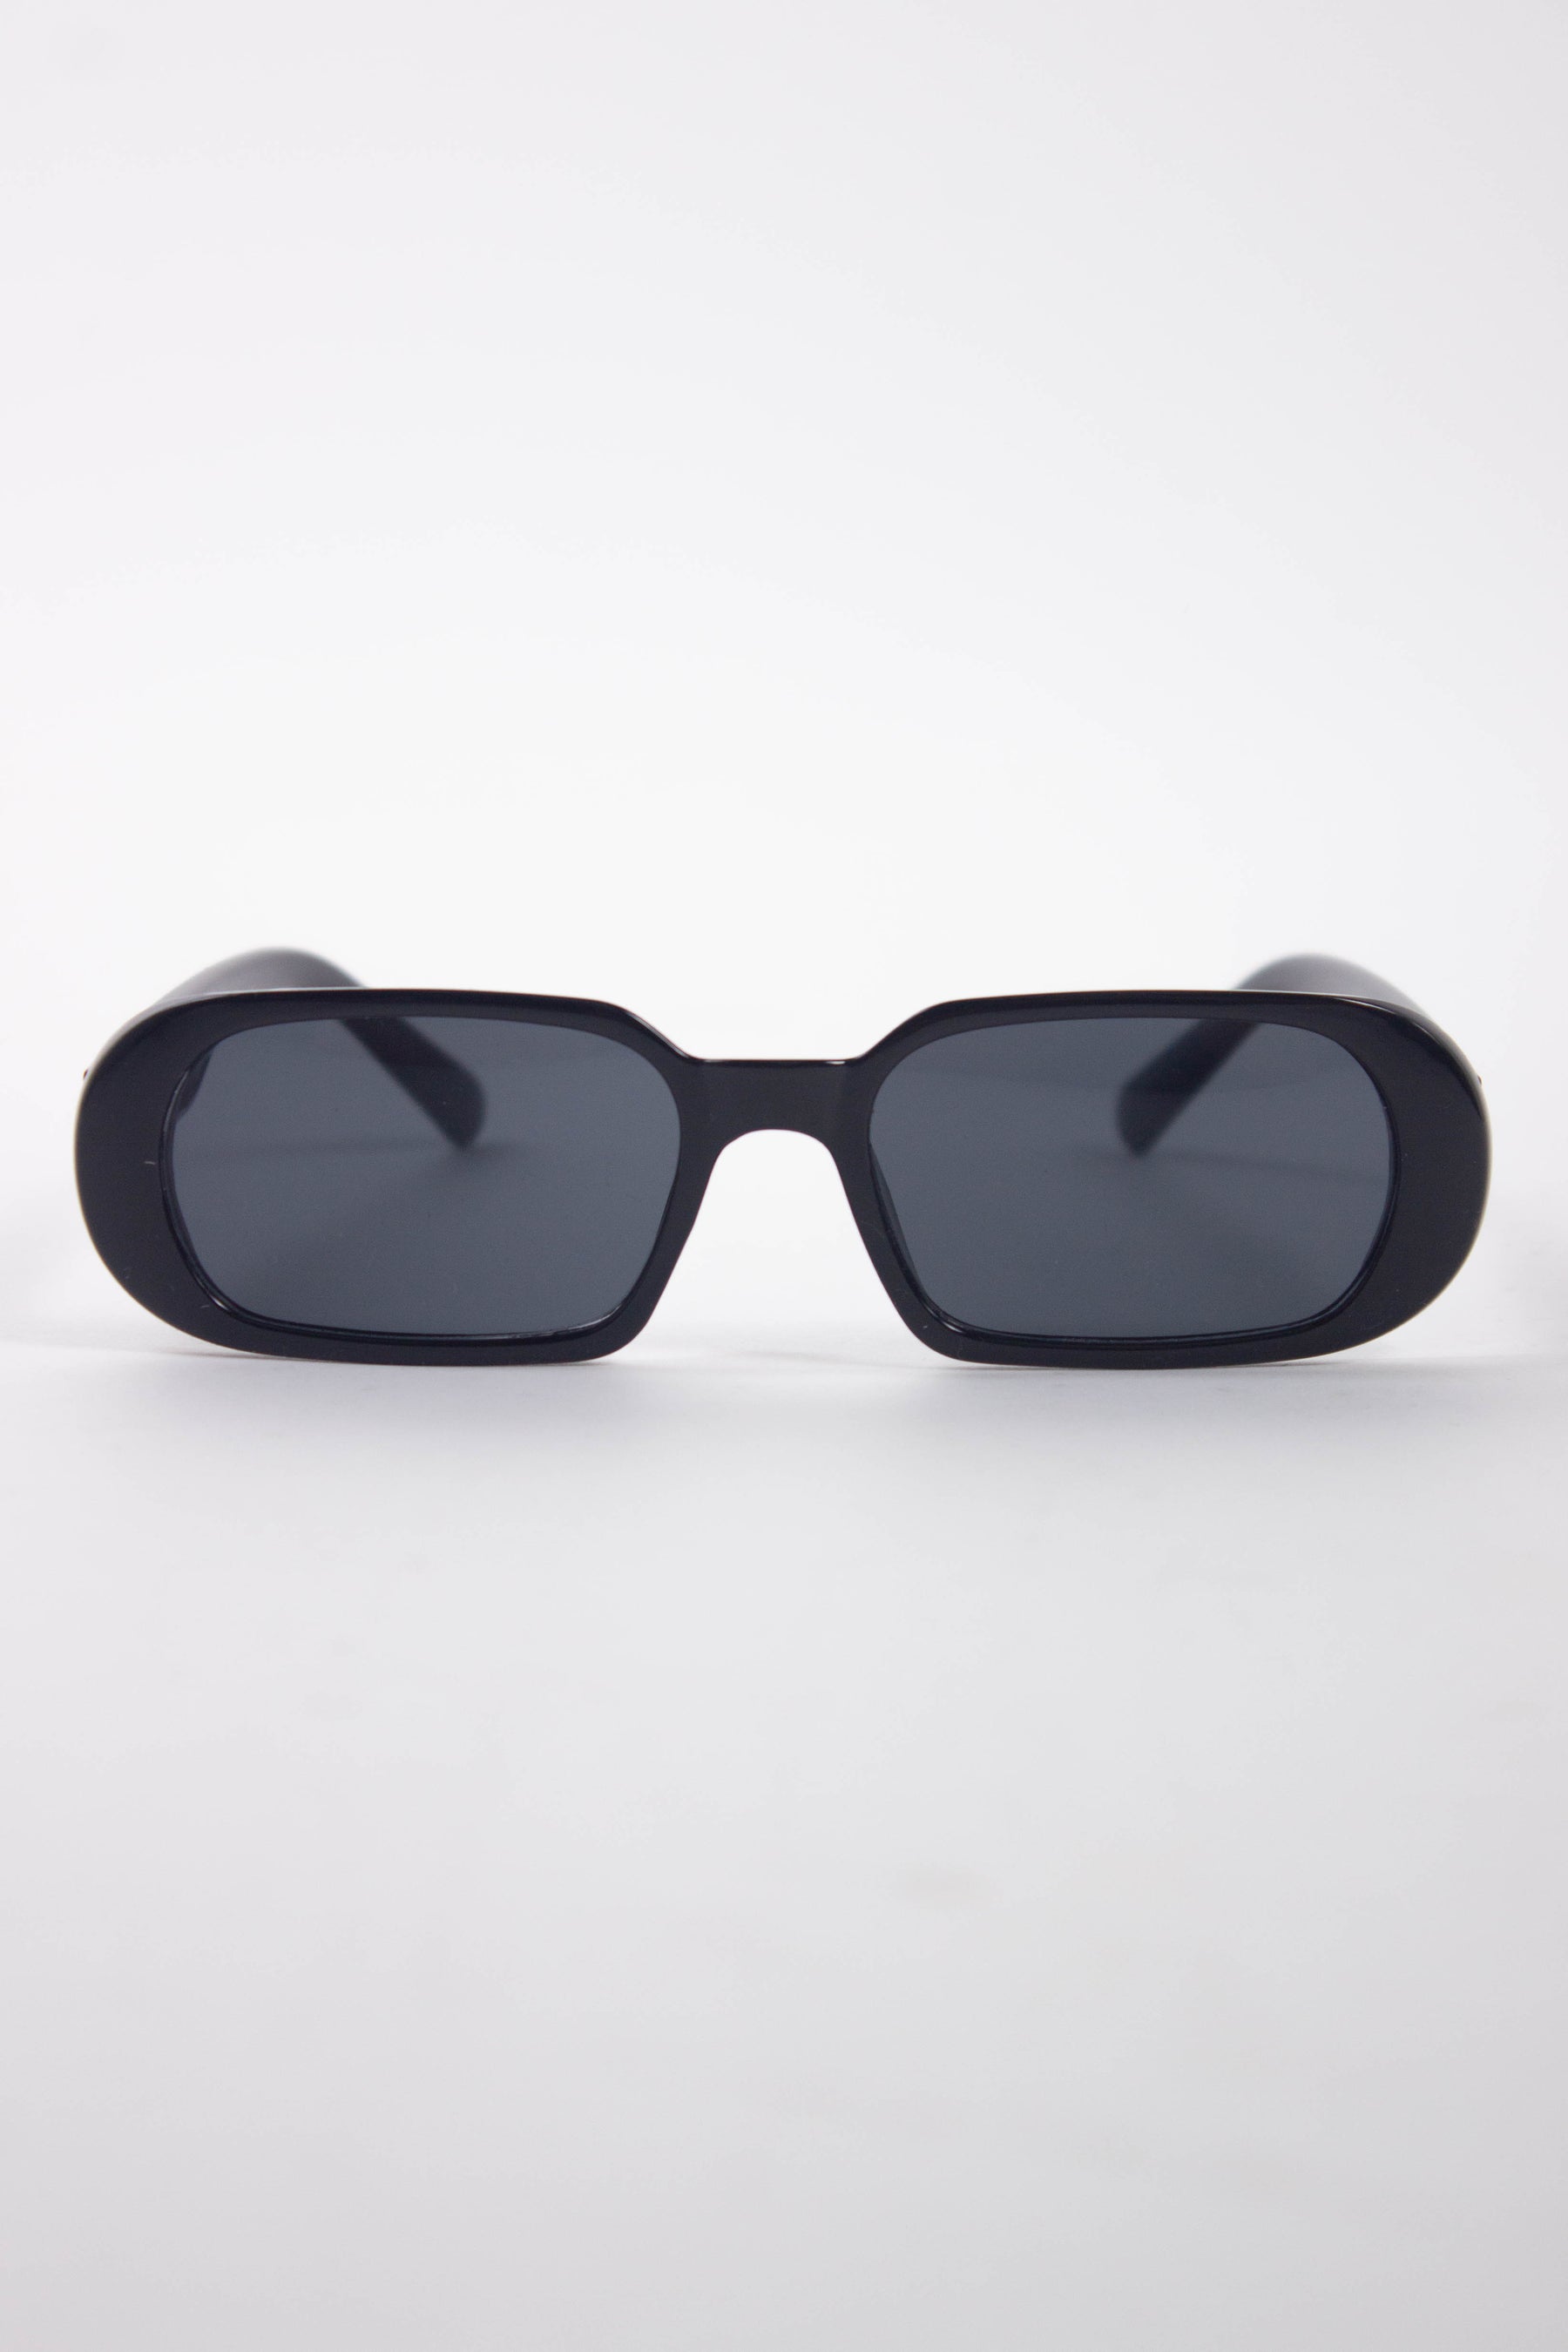 The Matrix Resurrections Sunglasses